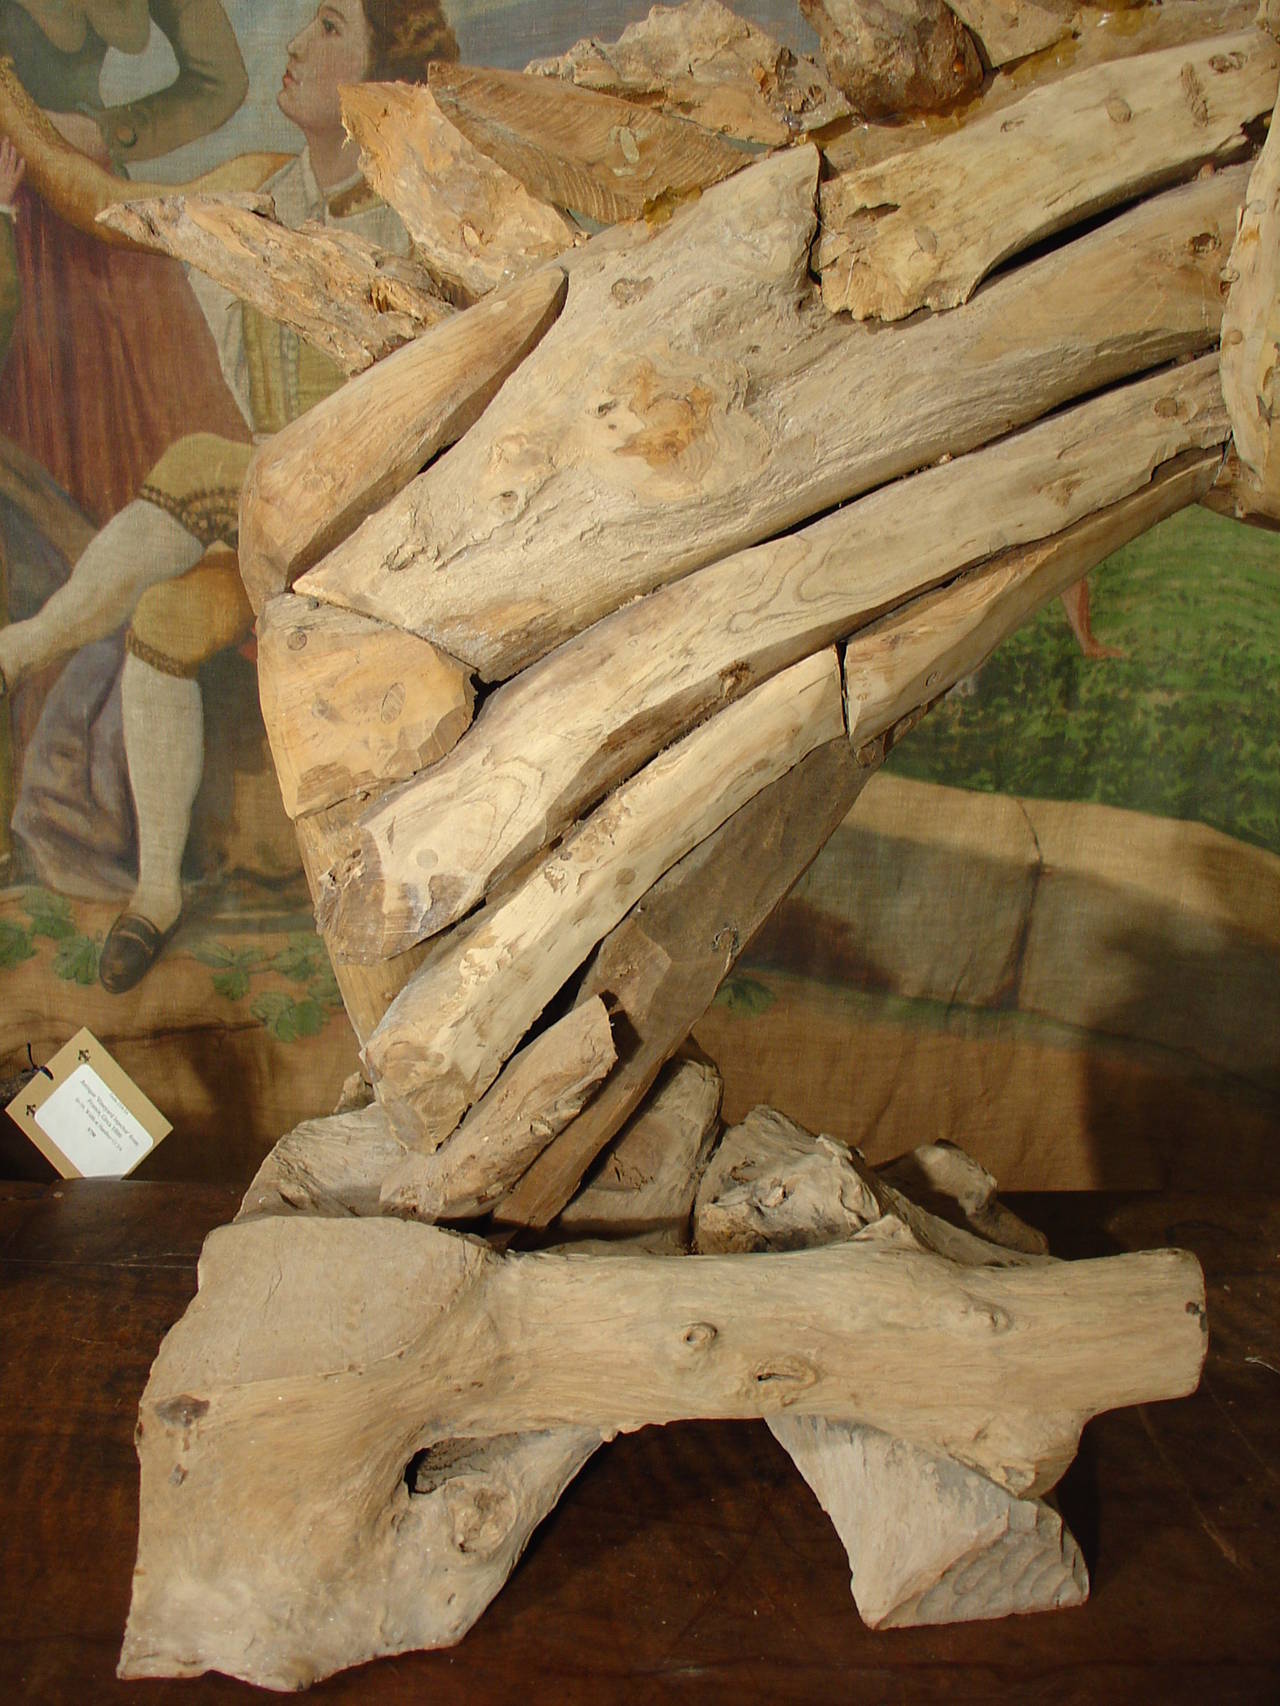 En provenance de France, cette sculpture en bois flotté absolument stupéfiante représente un cheval dans un état de grande émotion.  Le cheval a la bouche grande ouverte, la lèvre supérieure légèrement retroussée, la crinière flottant dans l'air et